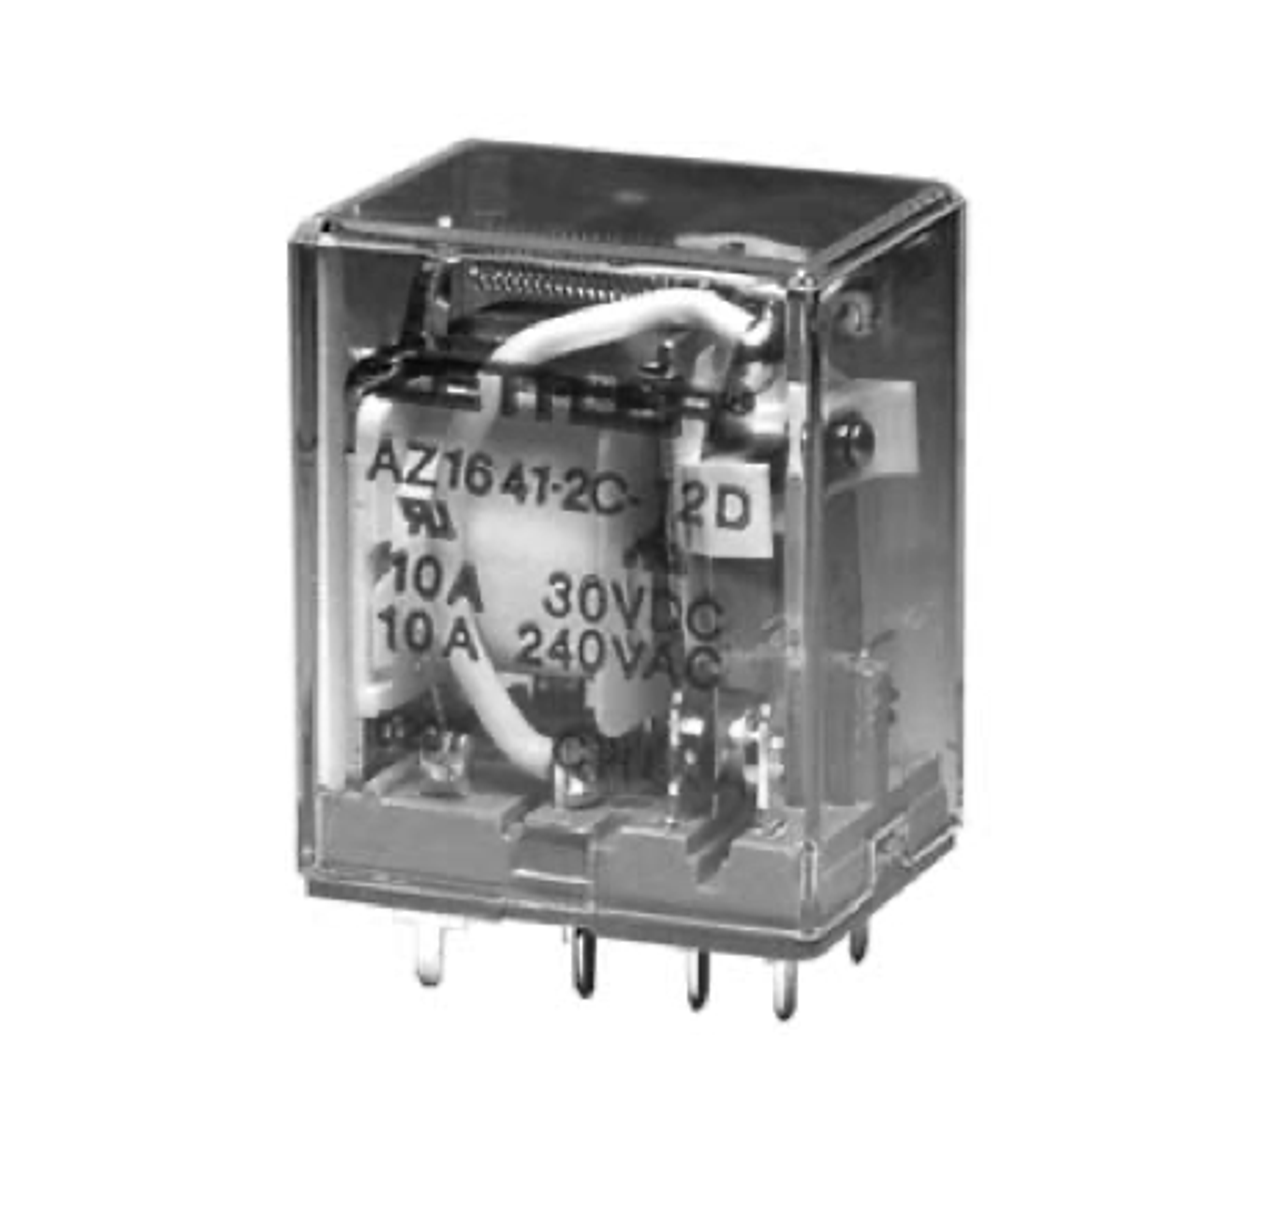 American Zettler AZ1641-4C-12A Power Relay